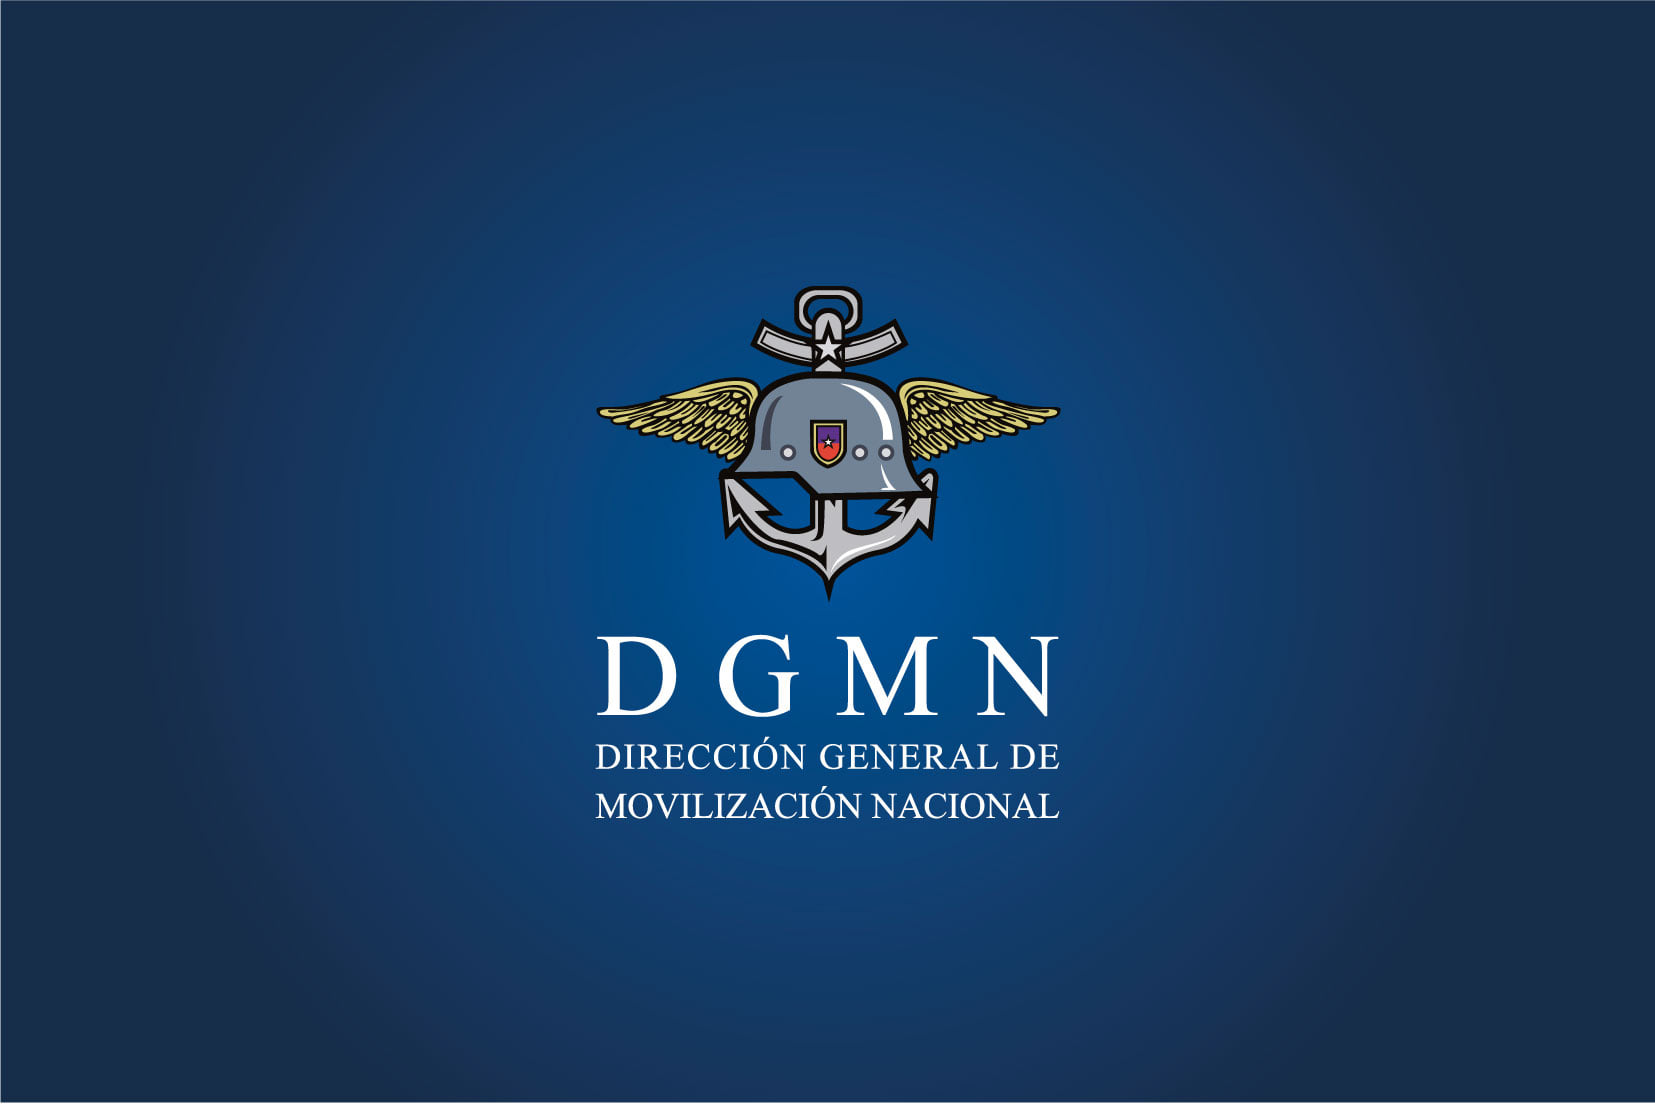  Corte de Santiago confirma entrega de información por parte de la Dirección General de Movilización Nacional (DGMN) sobre control de armas solicitada por ley de transparencia